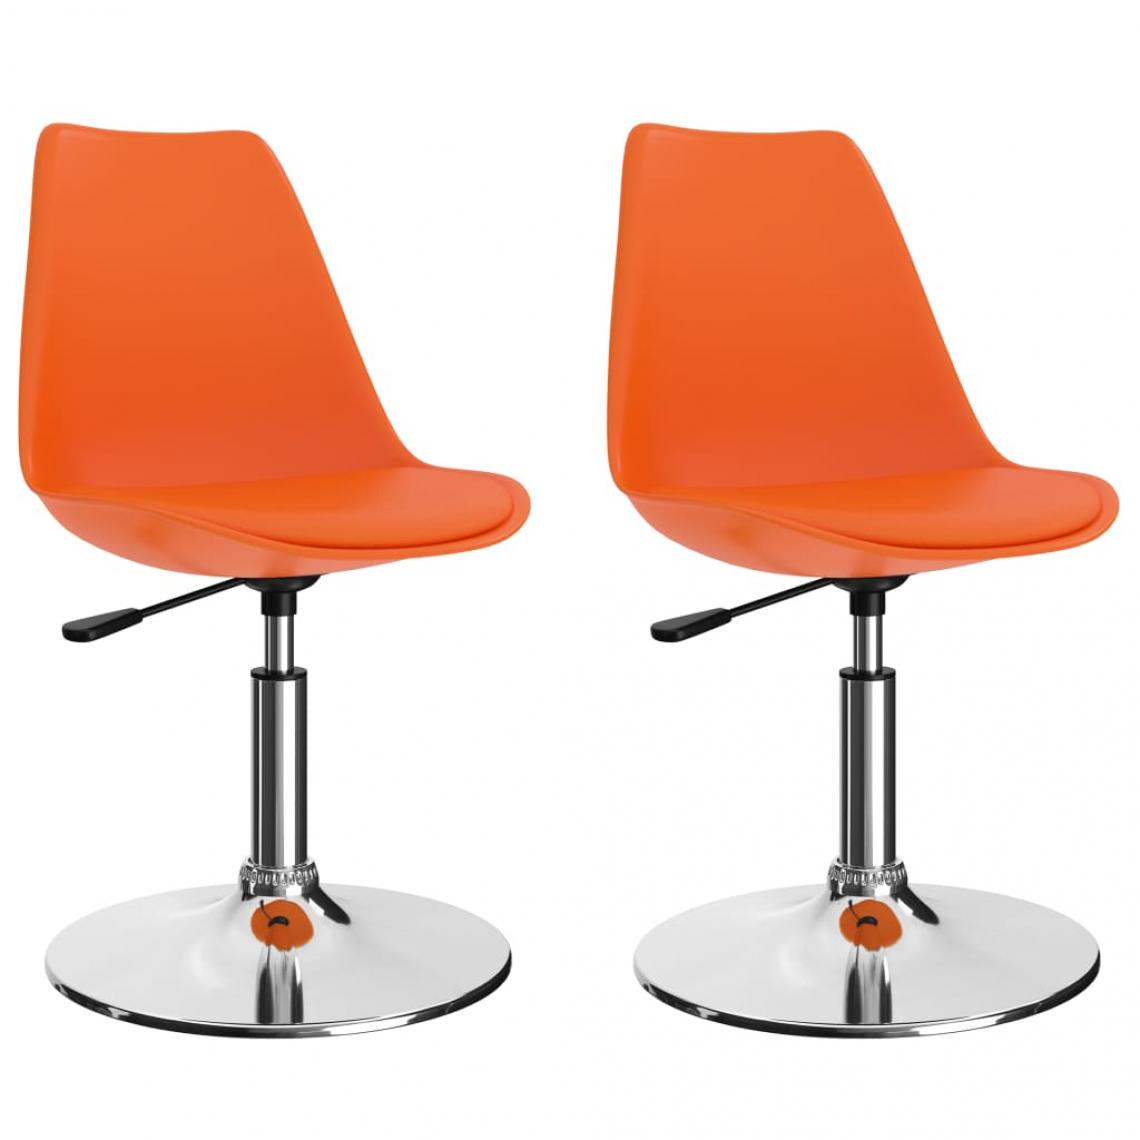 Decoshop26 - Lot de 2 chaises de salle à manger cuisine pivotantes design moderne similicuir orange CDS020929 - Chaises